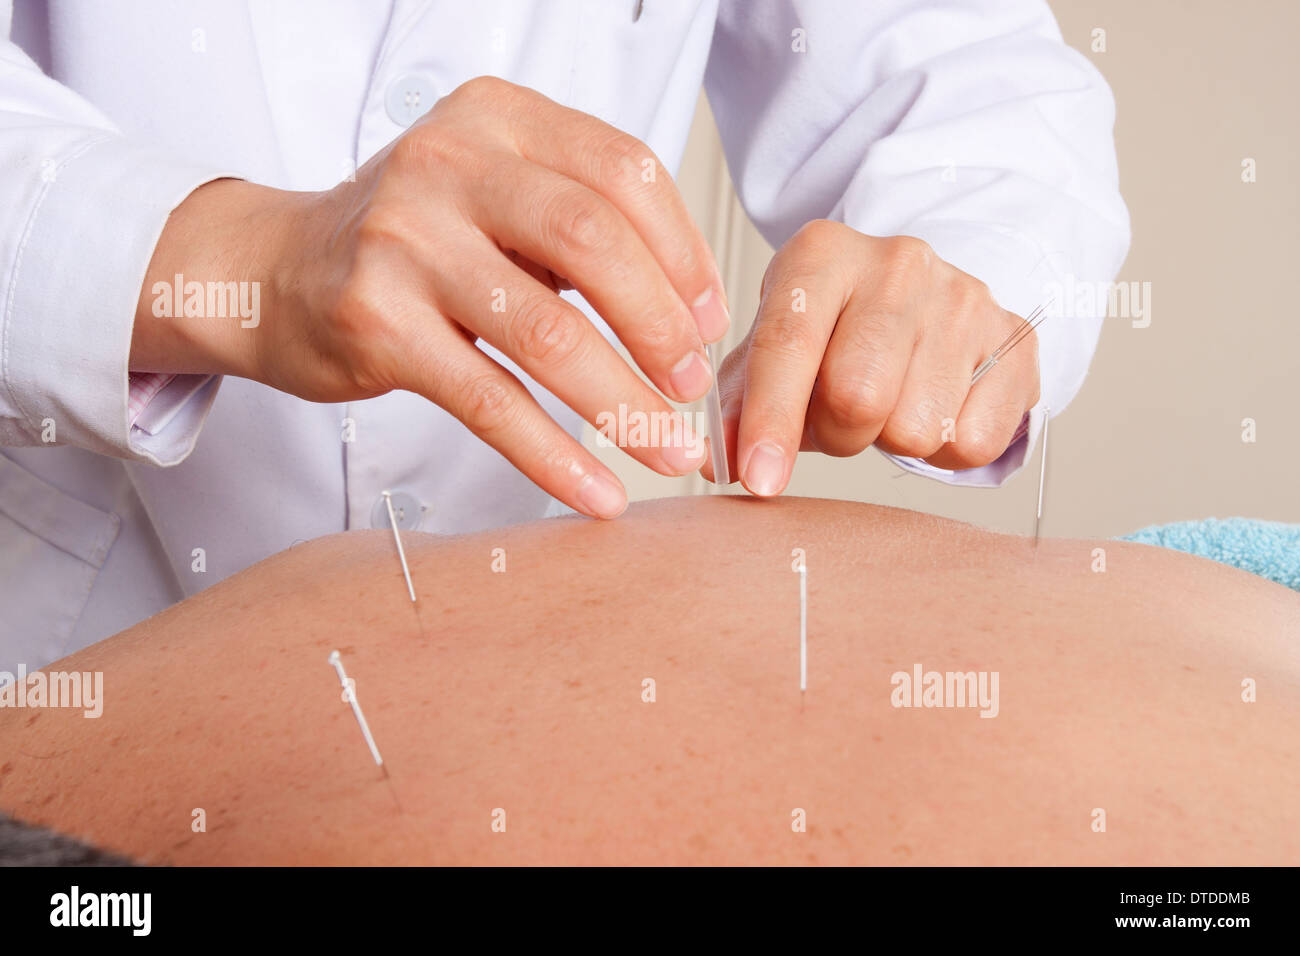 Homme ayant un traitement d'acupuncture pour la douleur dorsale Banque D'Images